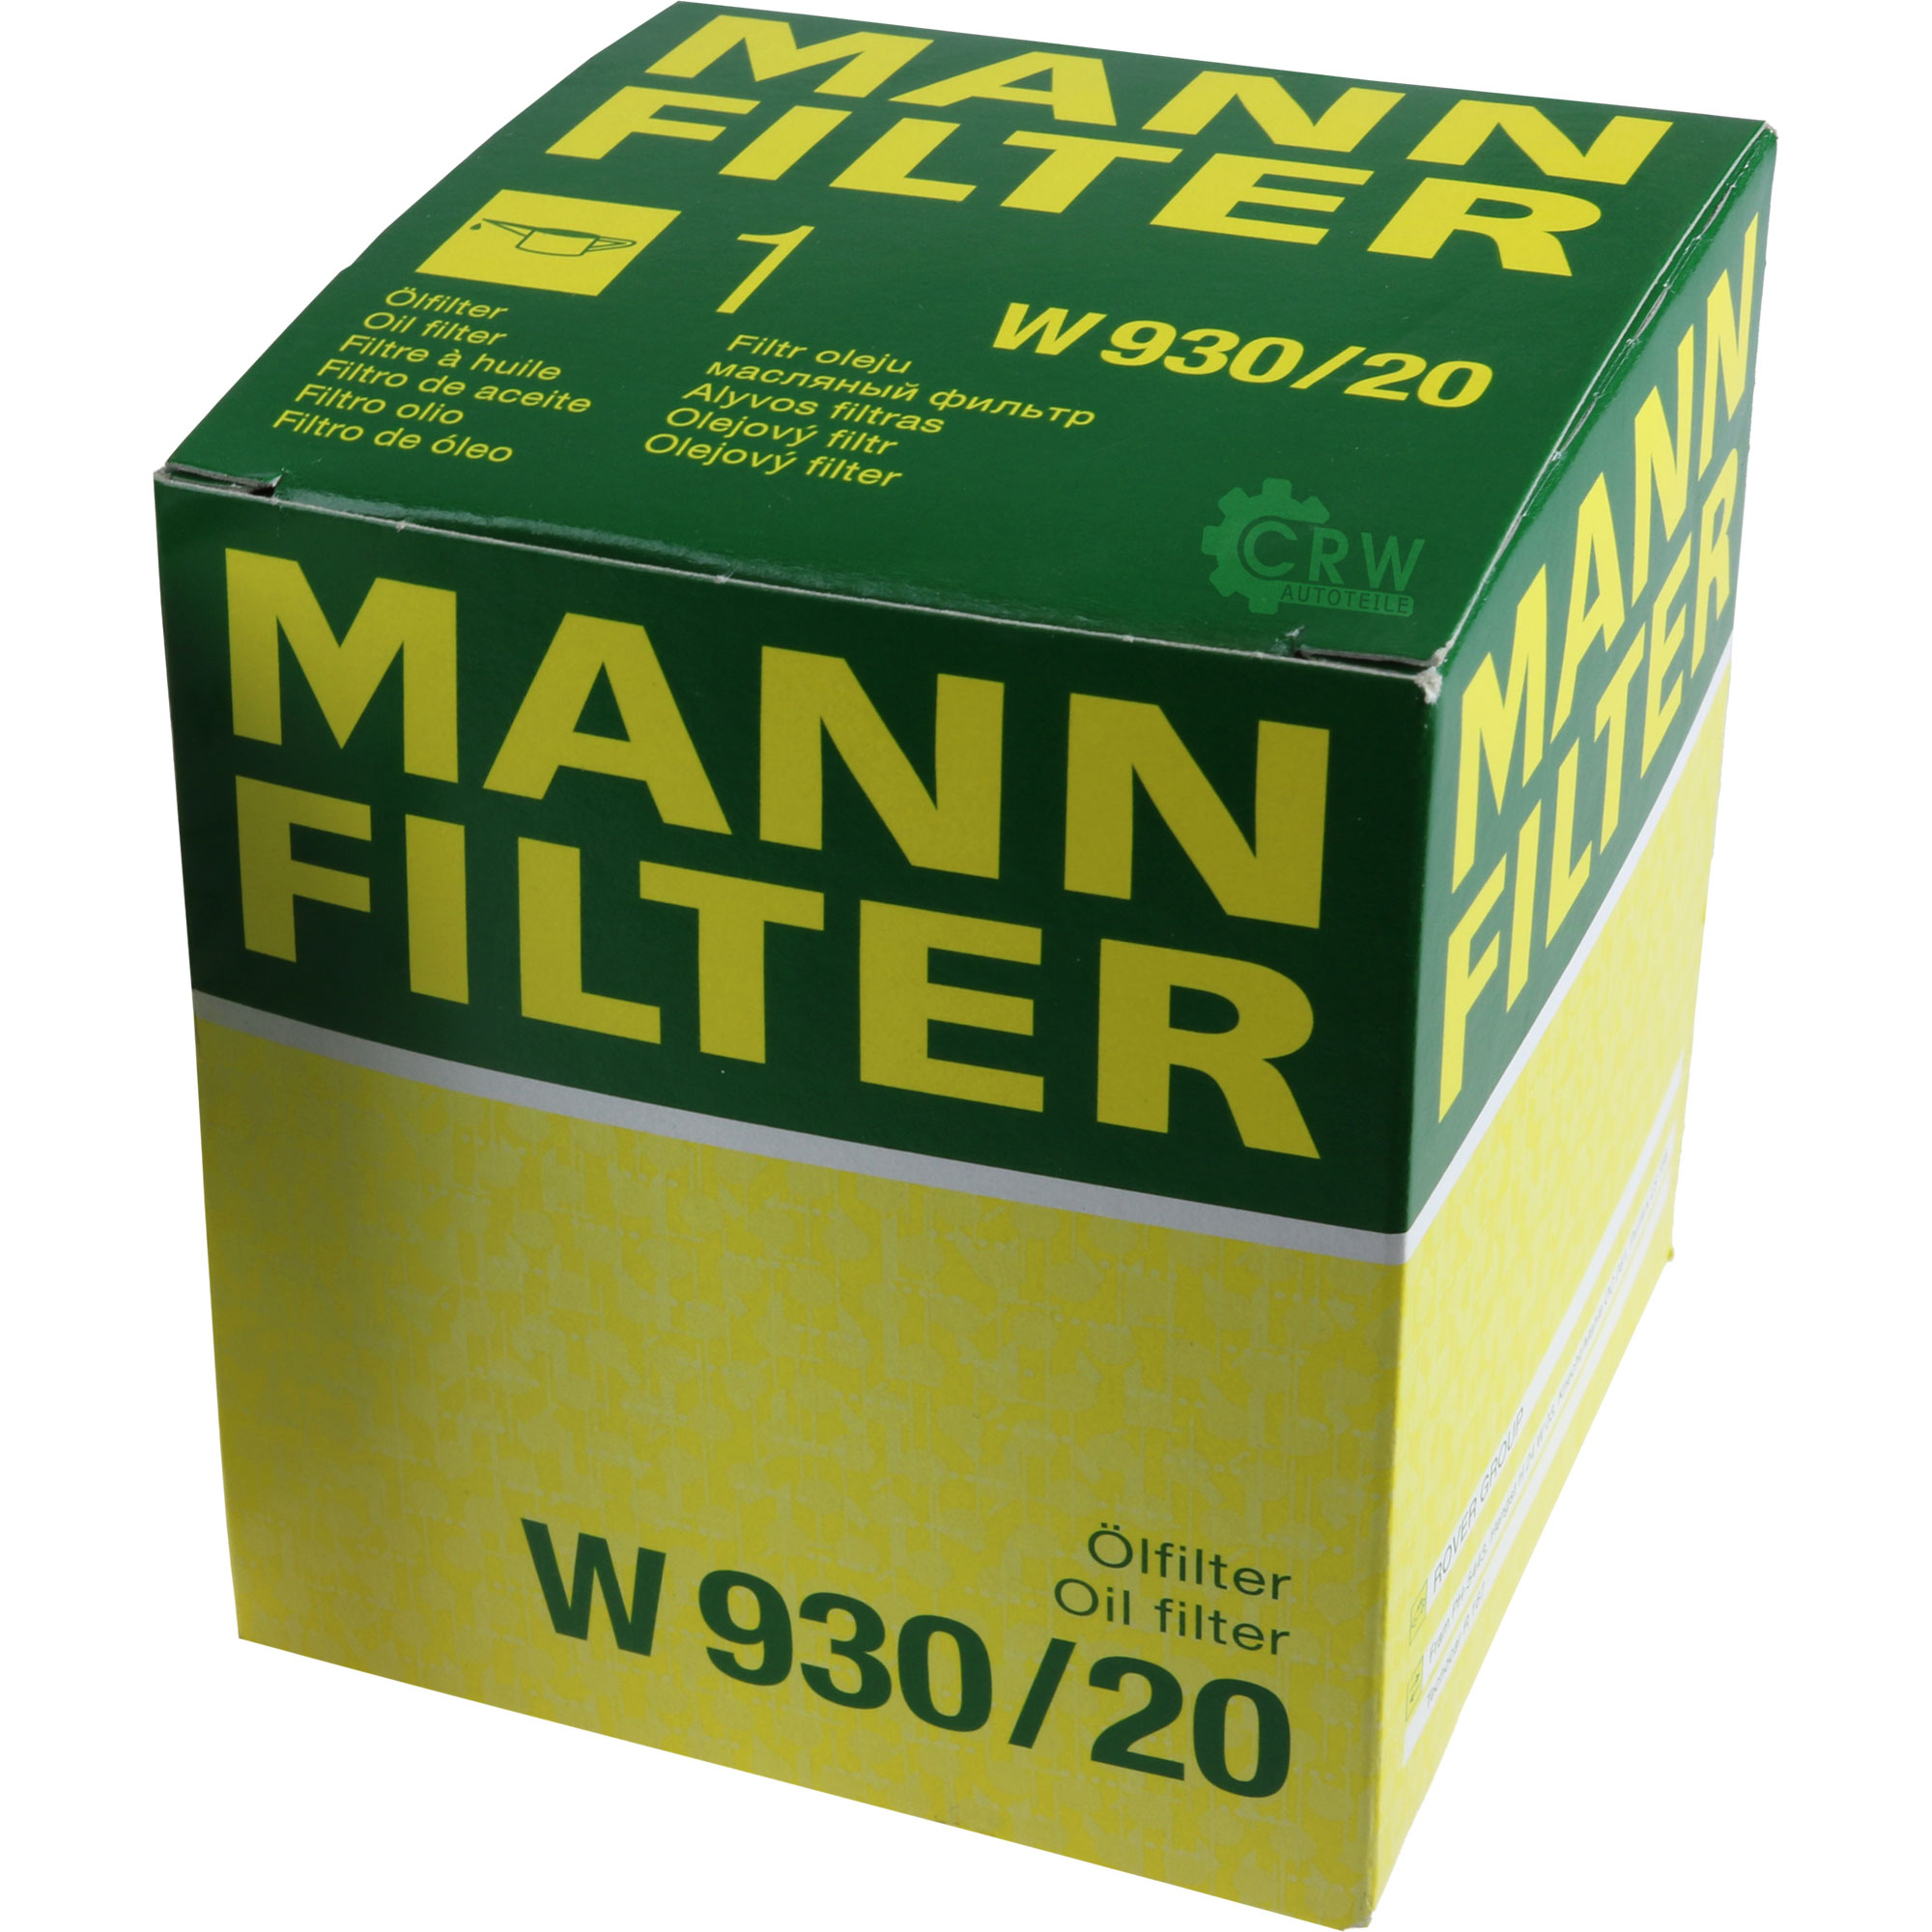 MANN-FILTER Ölfilter W 930/20 Oil Filter